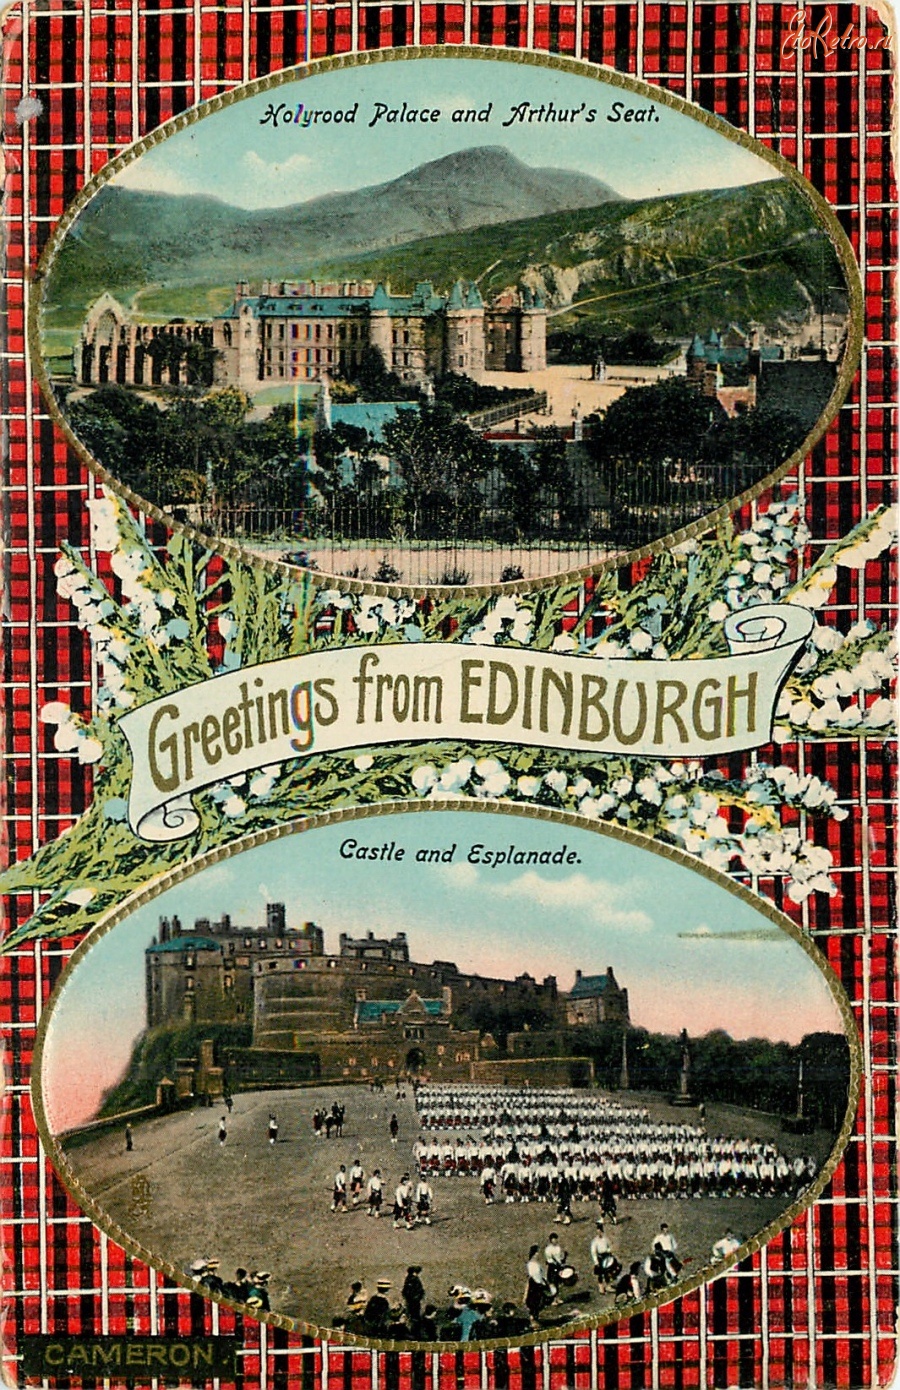 Эдинбург - Привет из Эдинбурга. Холирудский дворец и Резиденция Артура